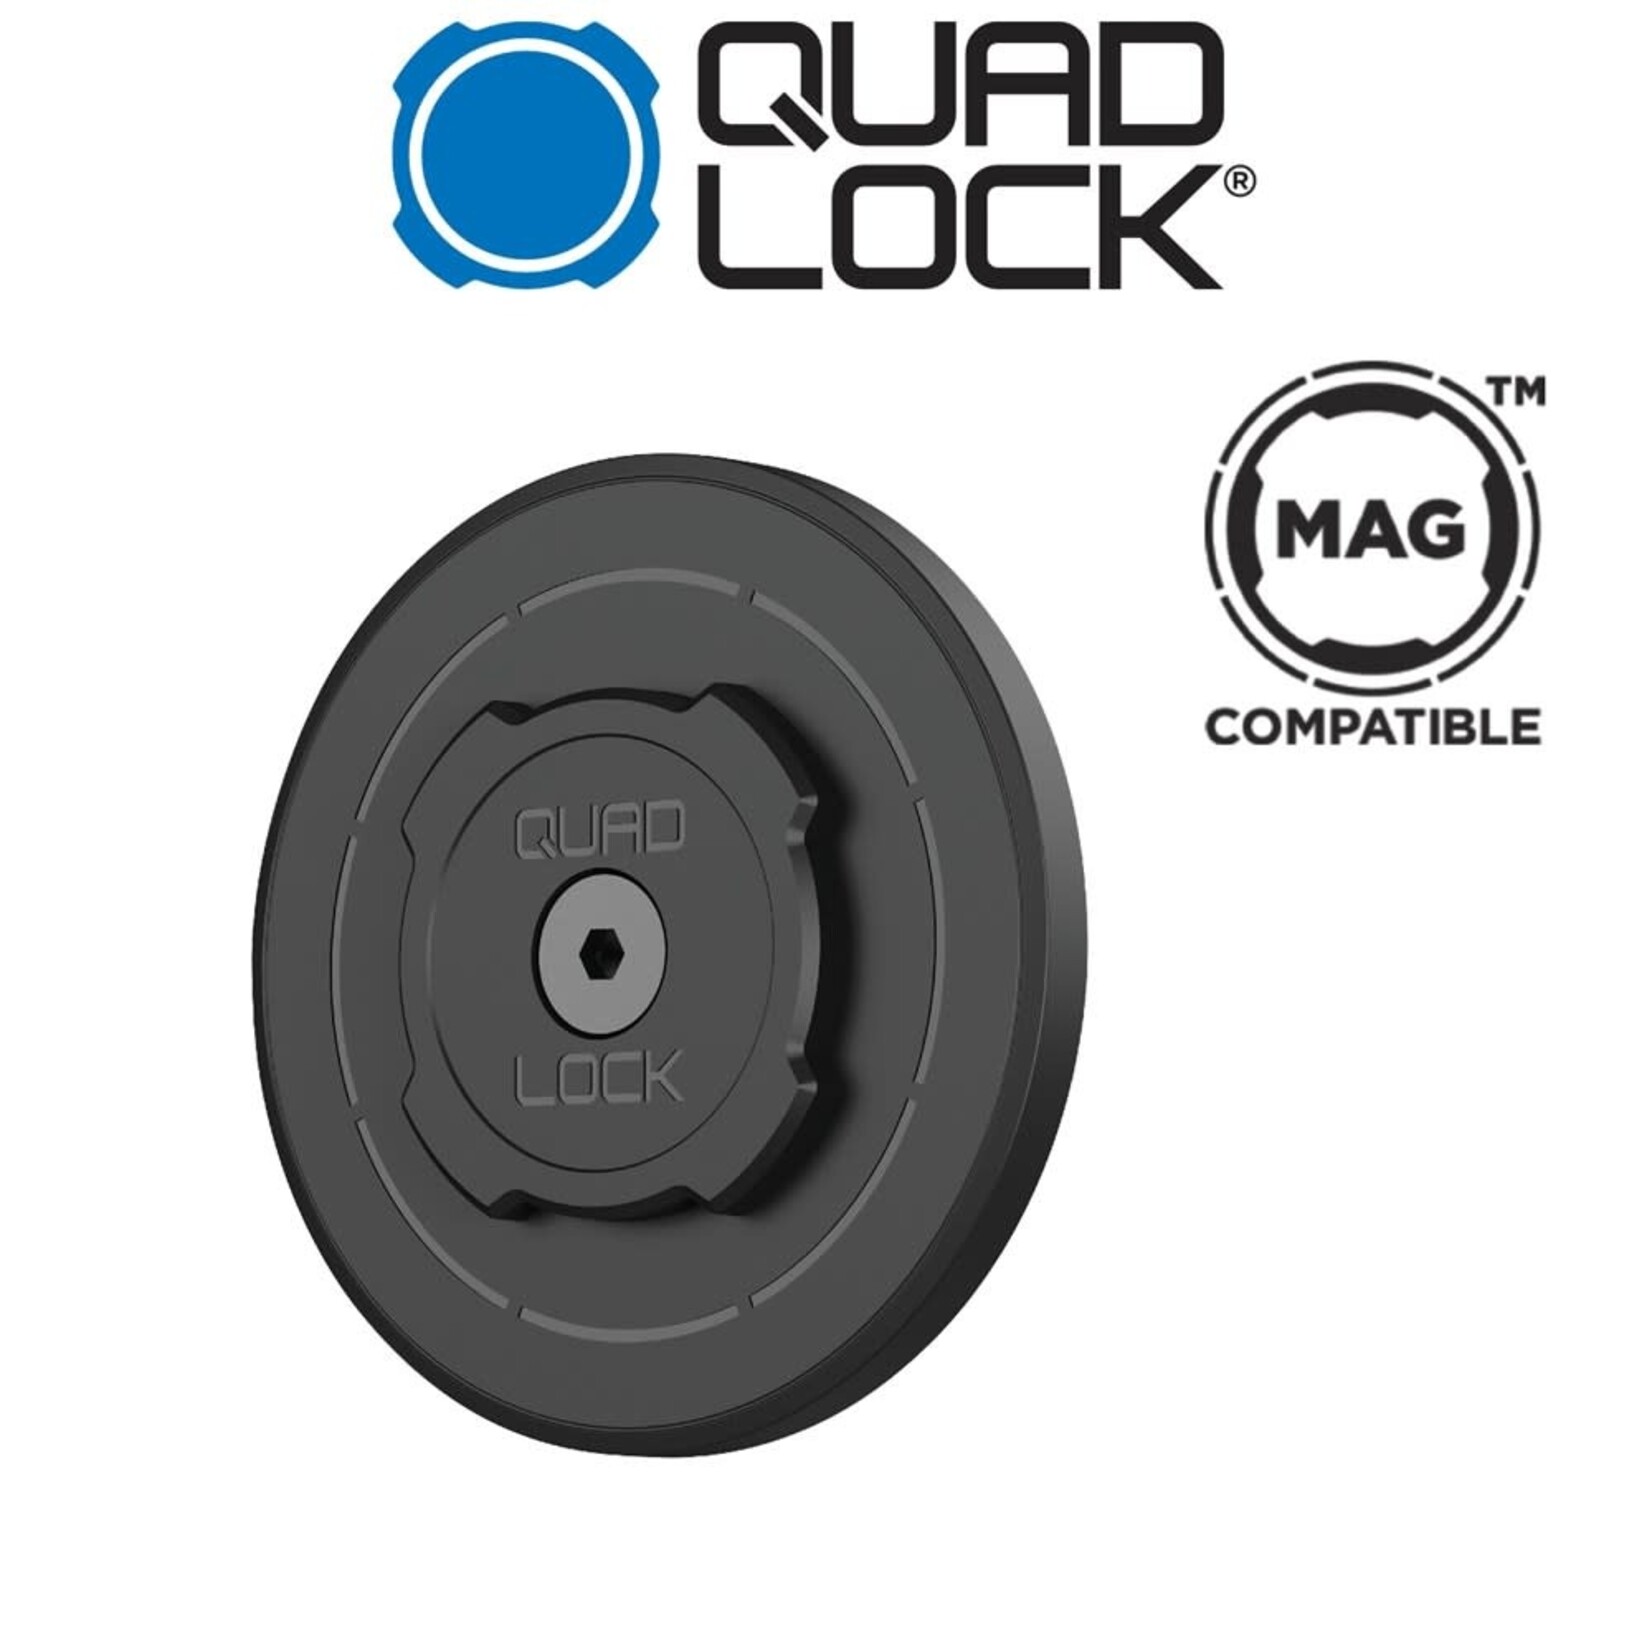 Quad Lock Mag Head - Car/Desk